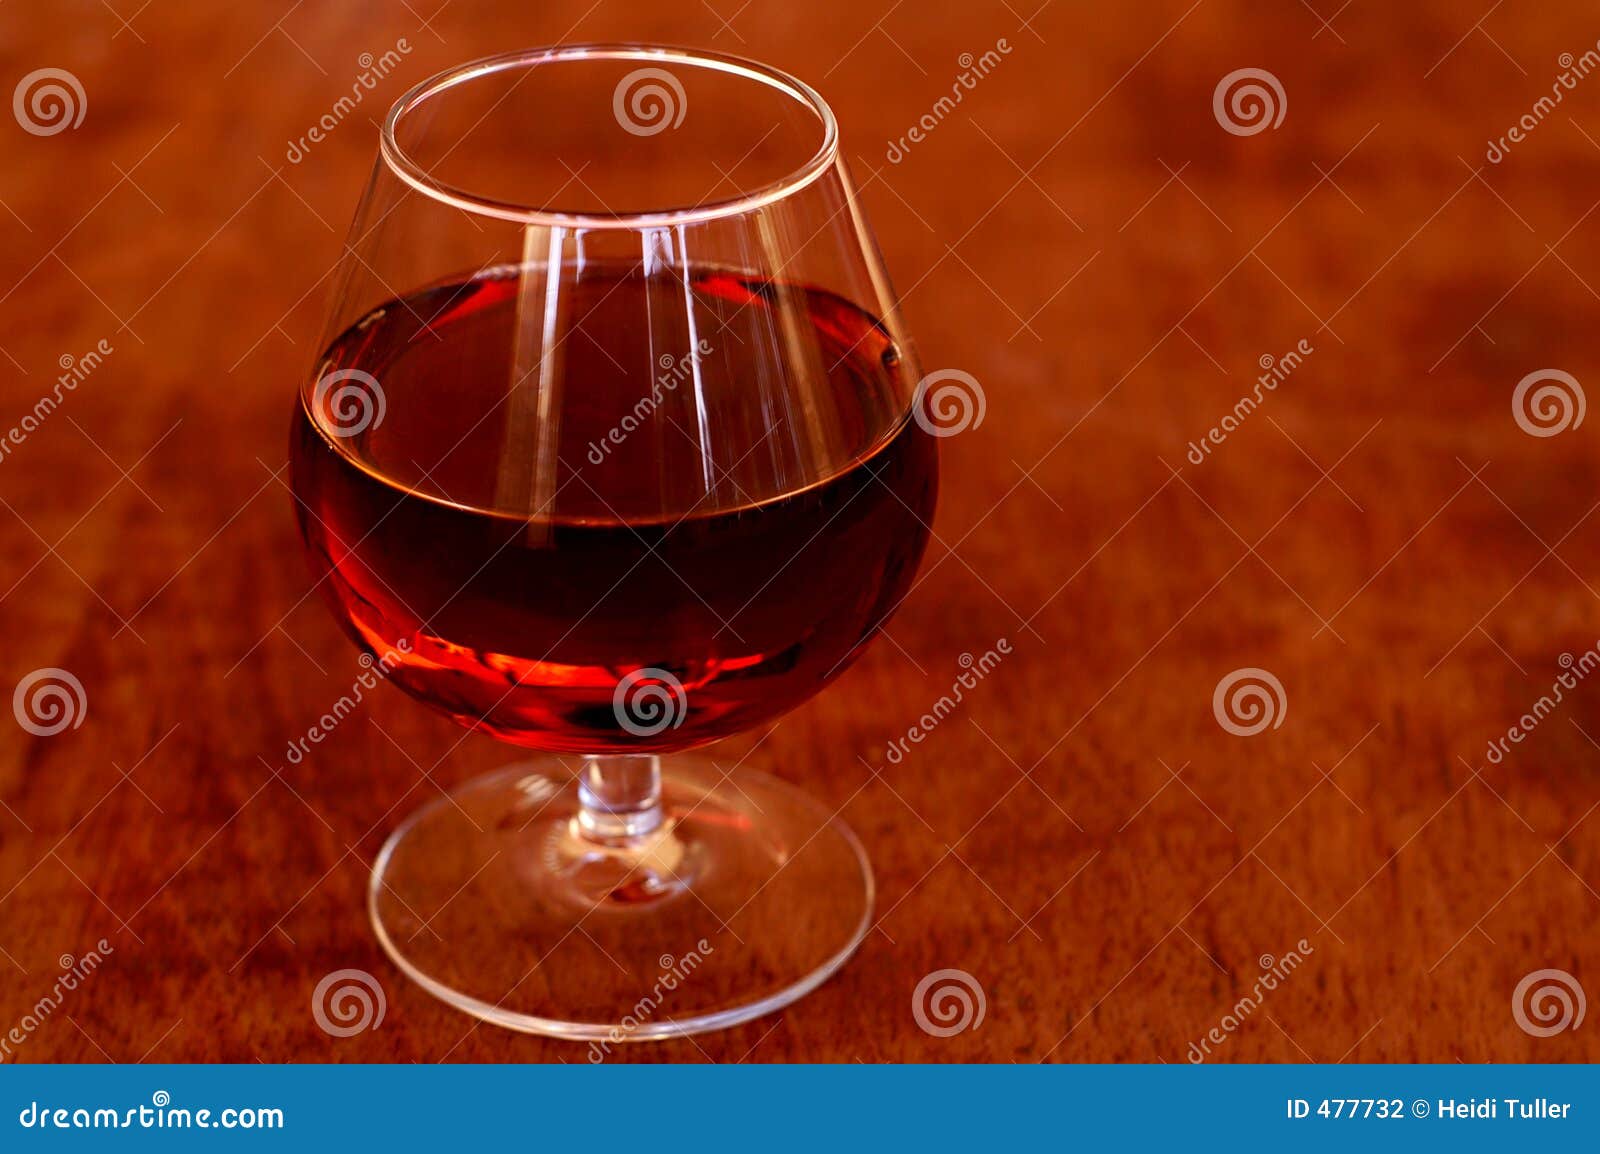 Atmospheric series IV. Cognac glas - beautiful warm atmosphere